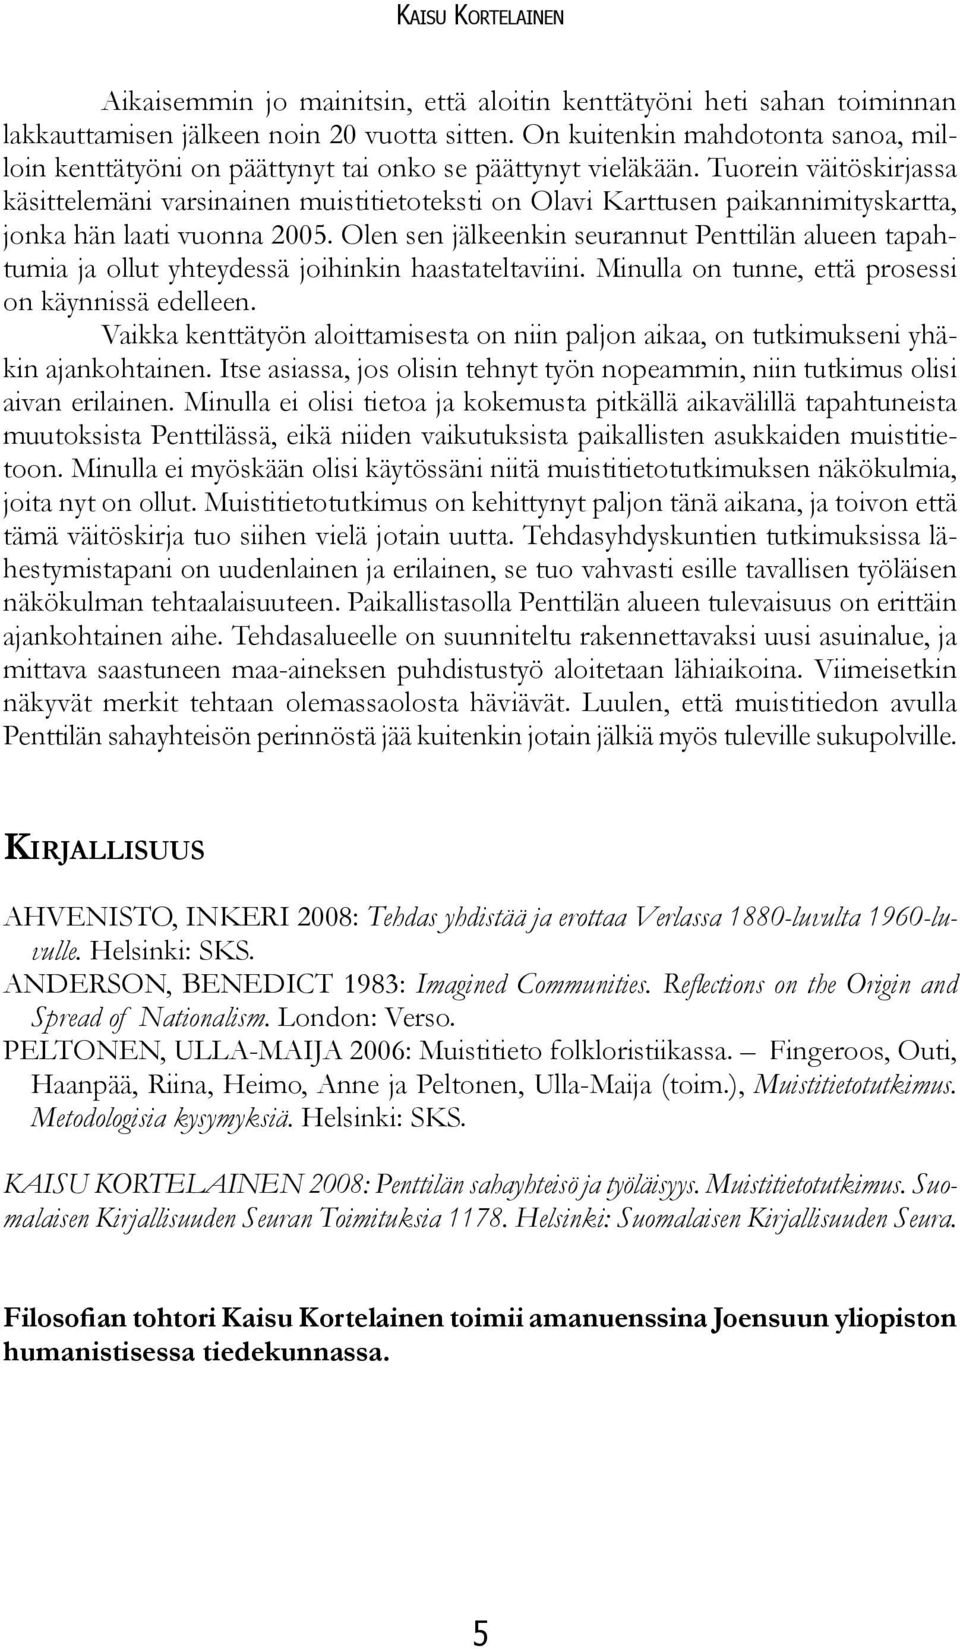 Tuorein väitöskirjassa käsittelemäni varsinainen muistitietoteksti on Olavi Karttusen paikannimityskartta, jonka hän laati vuonna 2005.